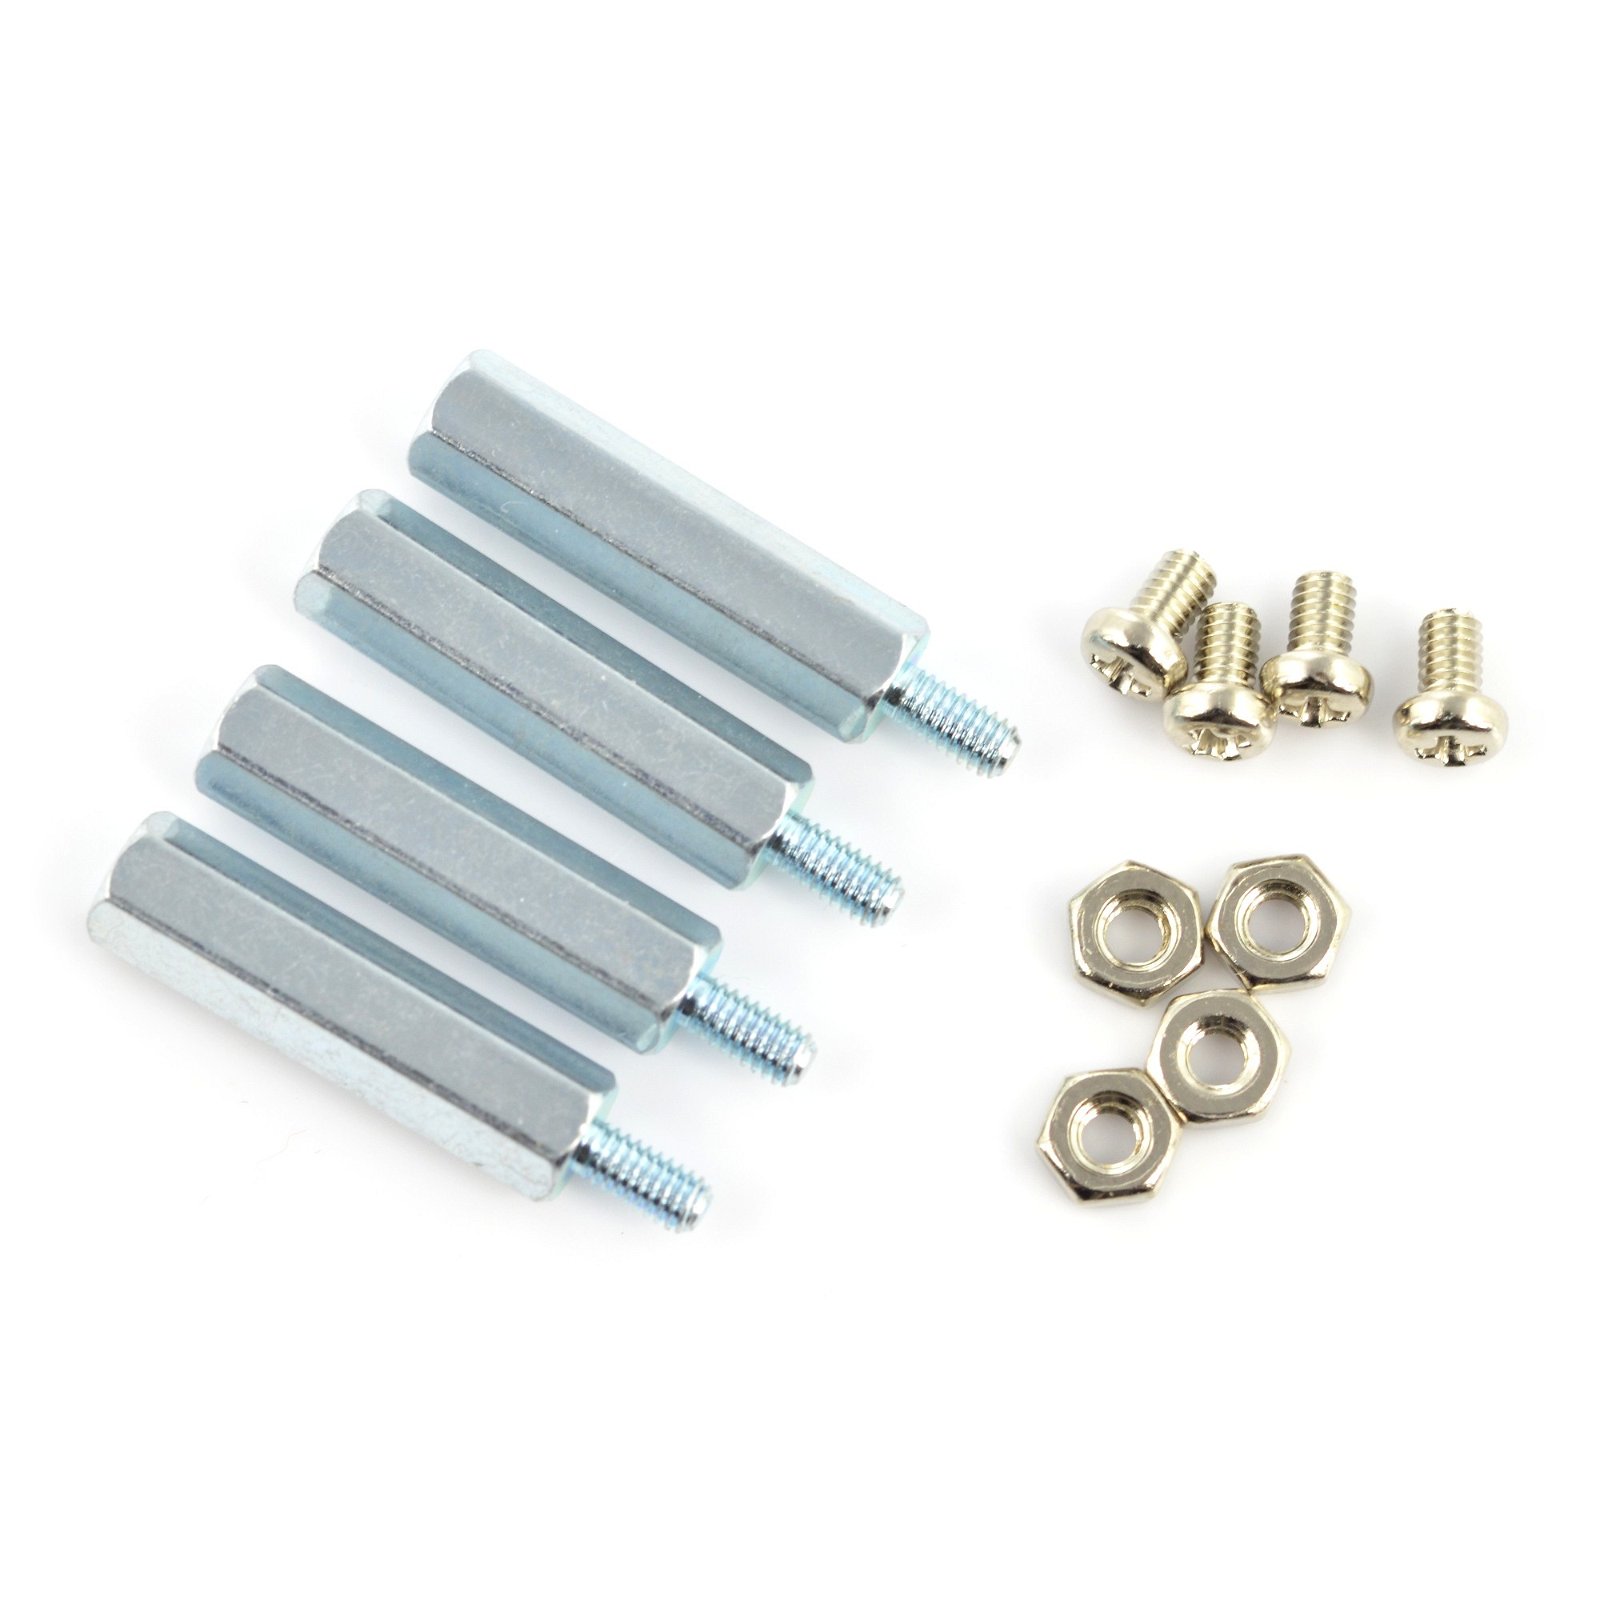 Metal spacers M2,5 20mm + screws + nuts - 4pcs